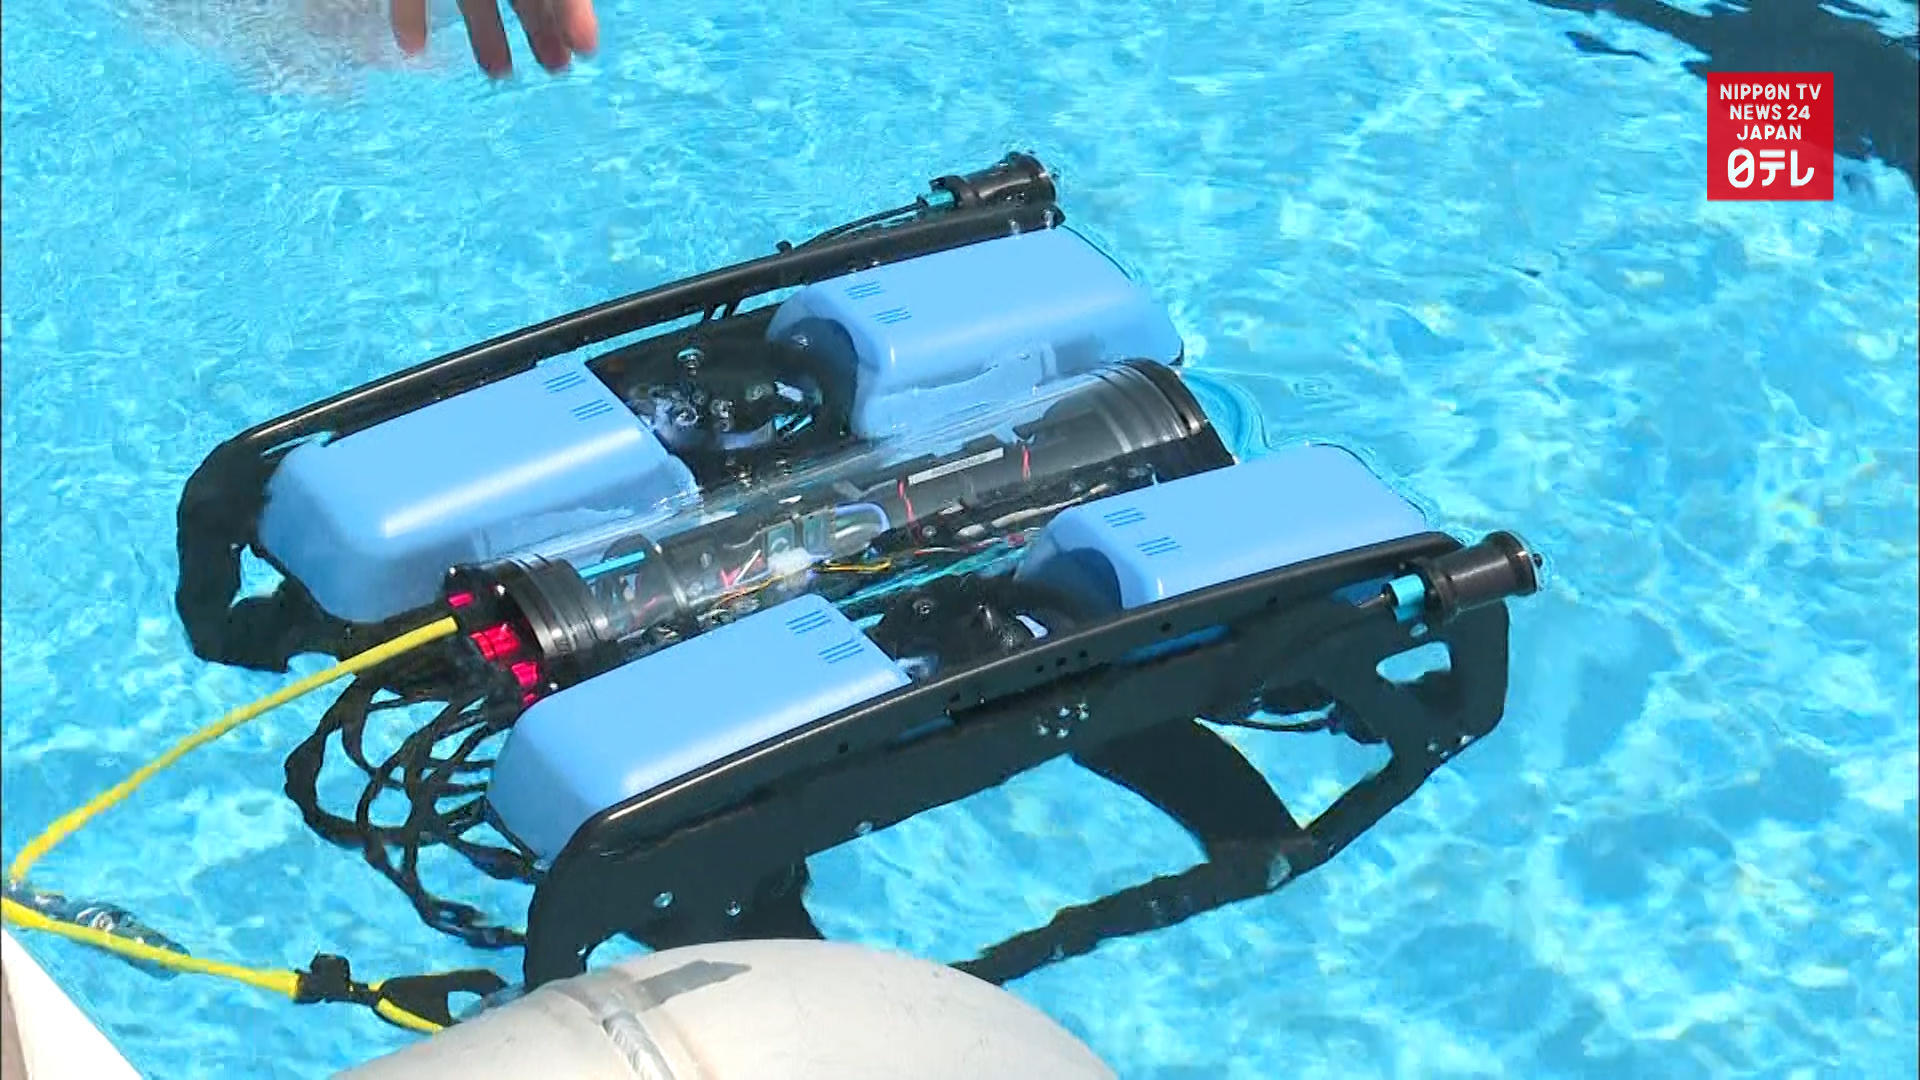 Underwater drone is making waves